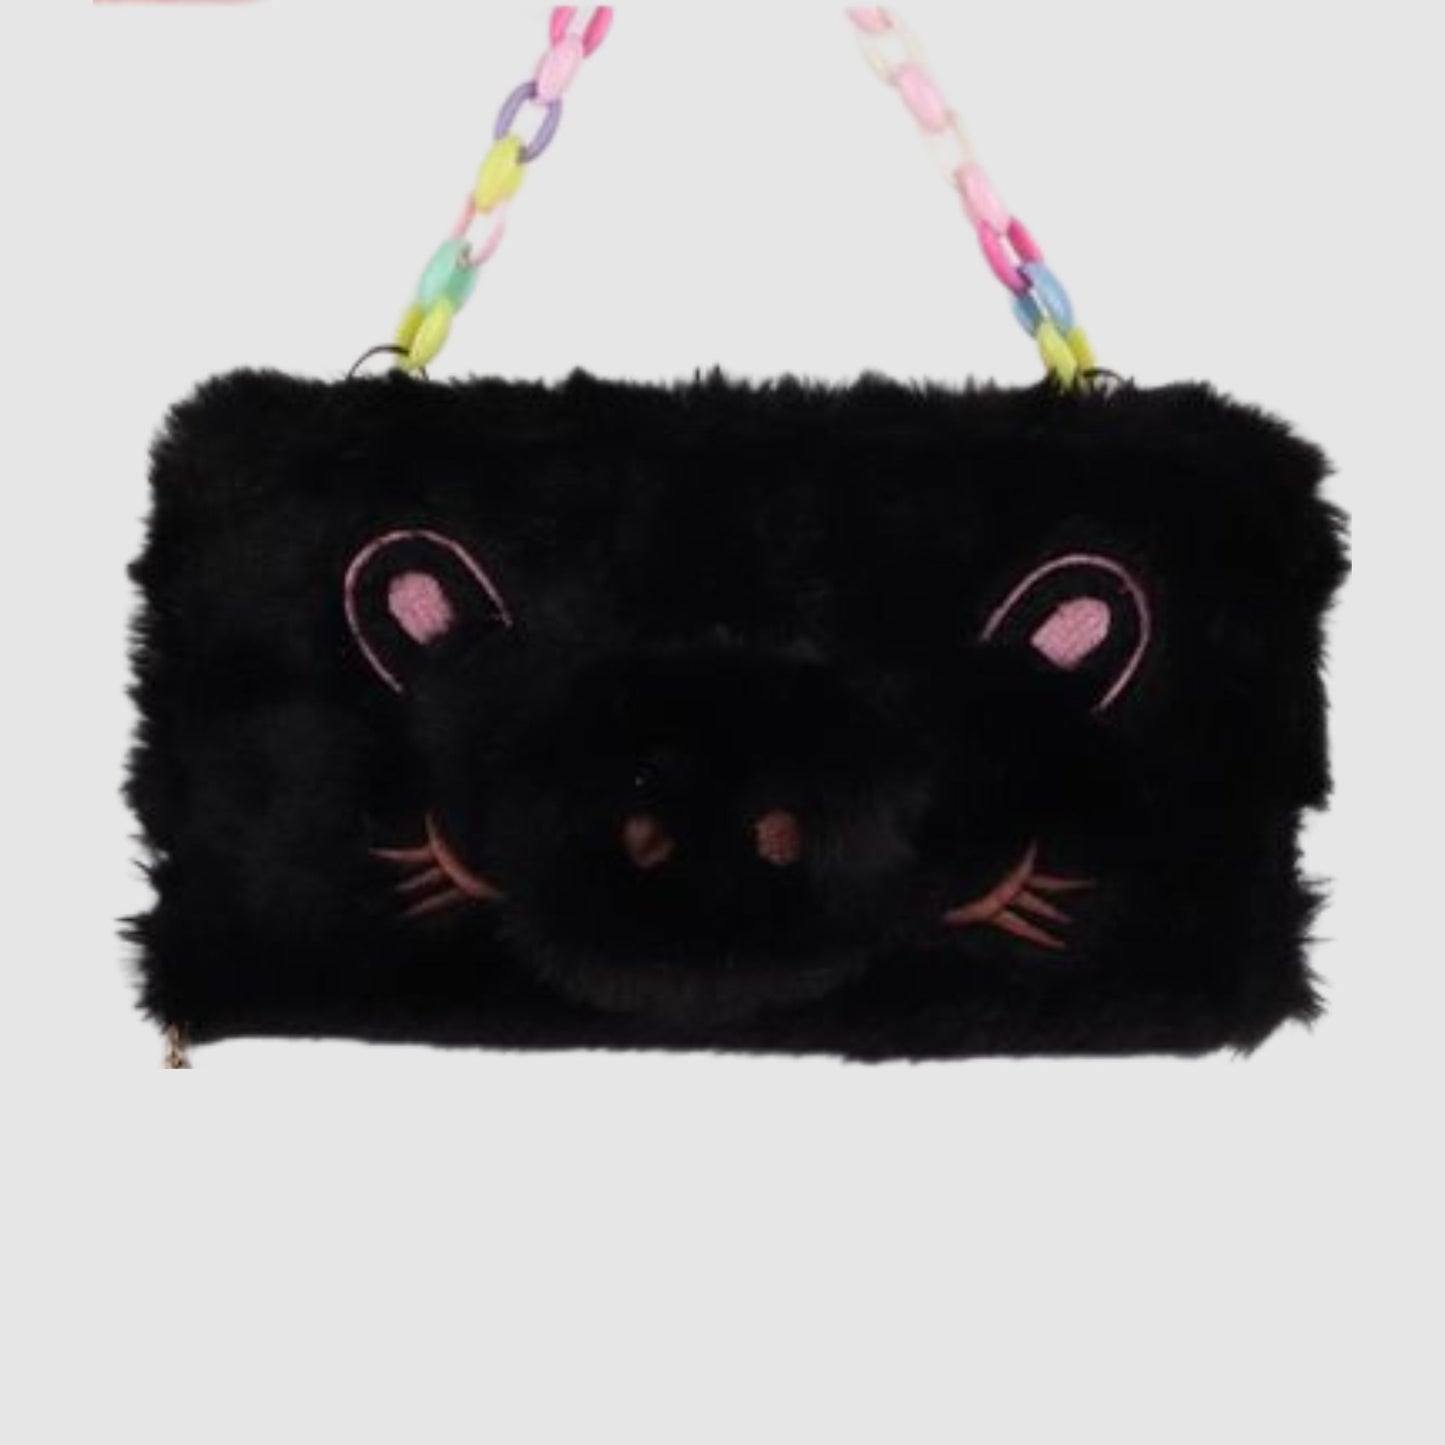 S3007 Fluffy Pig Wallet / Handbag